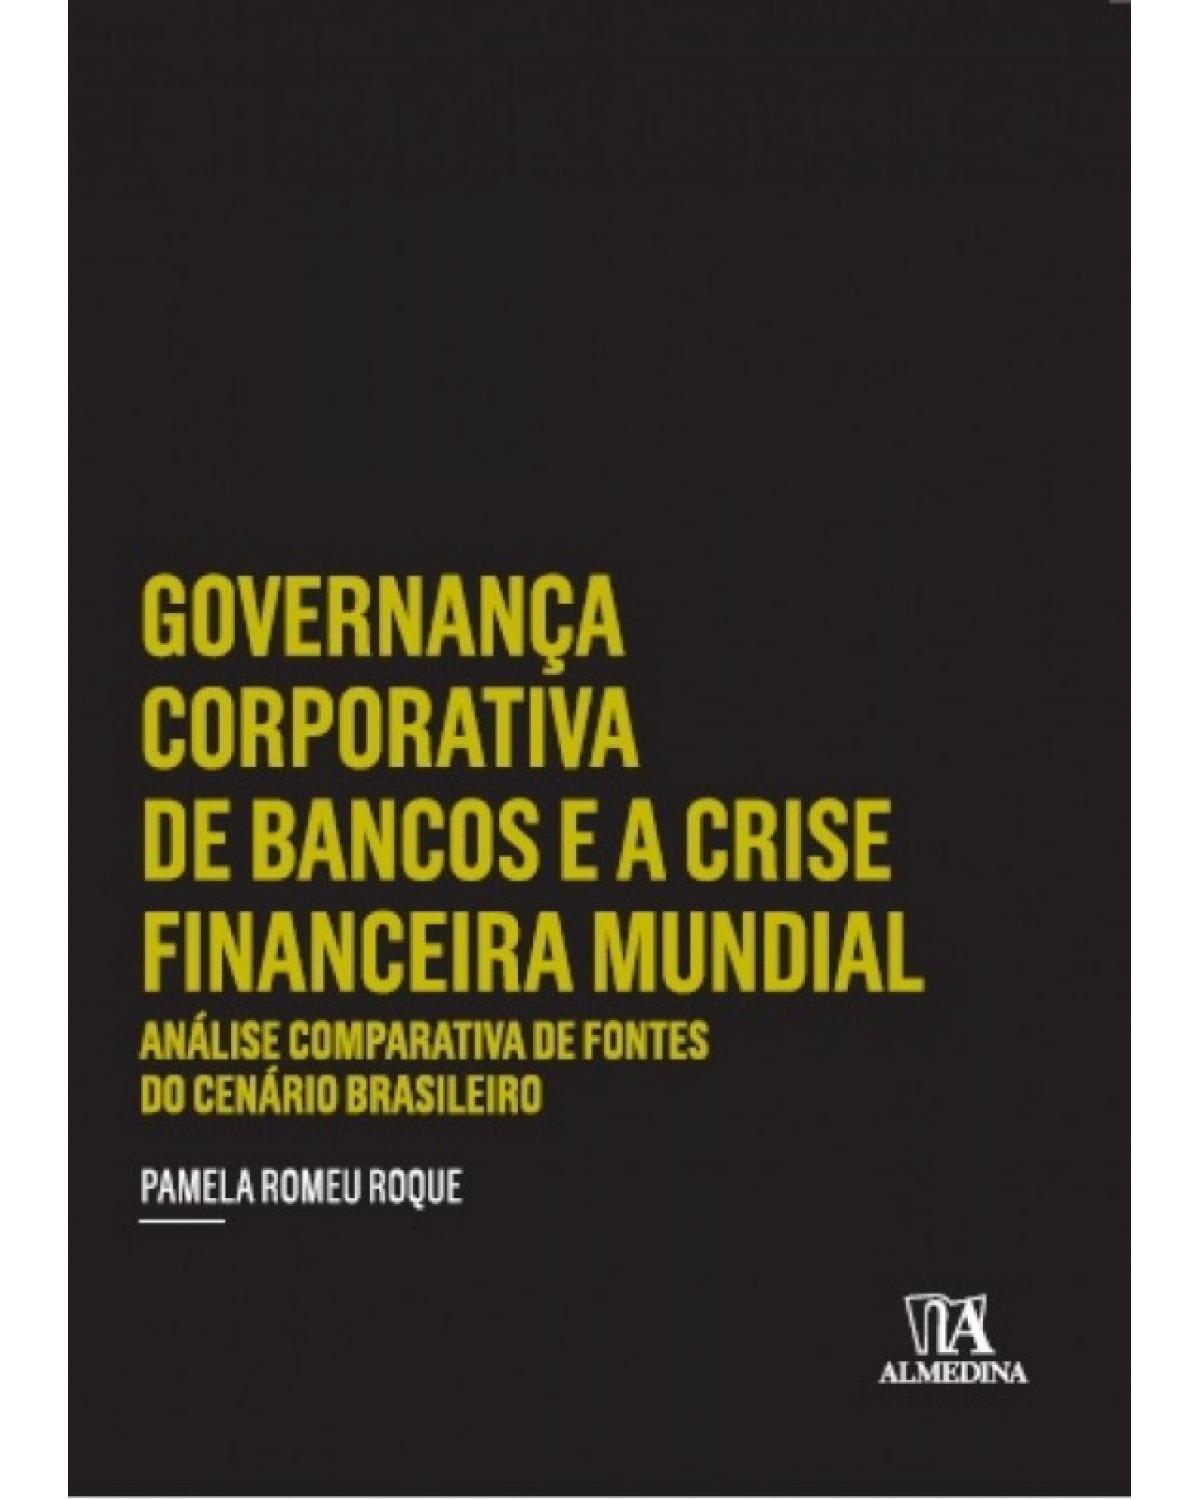 Governança corporativa de bancos e a crise financeira mundial - Análise comparativa de fontes do cenário brasileiro - 1ª Edição | 2017